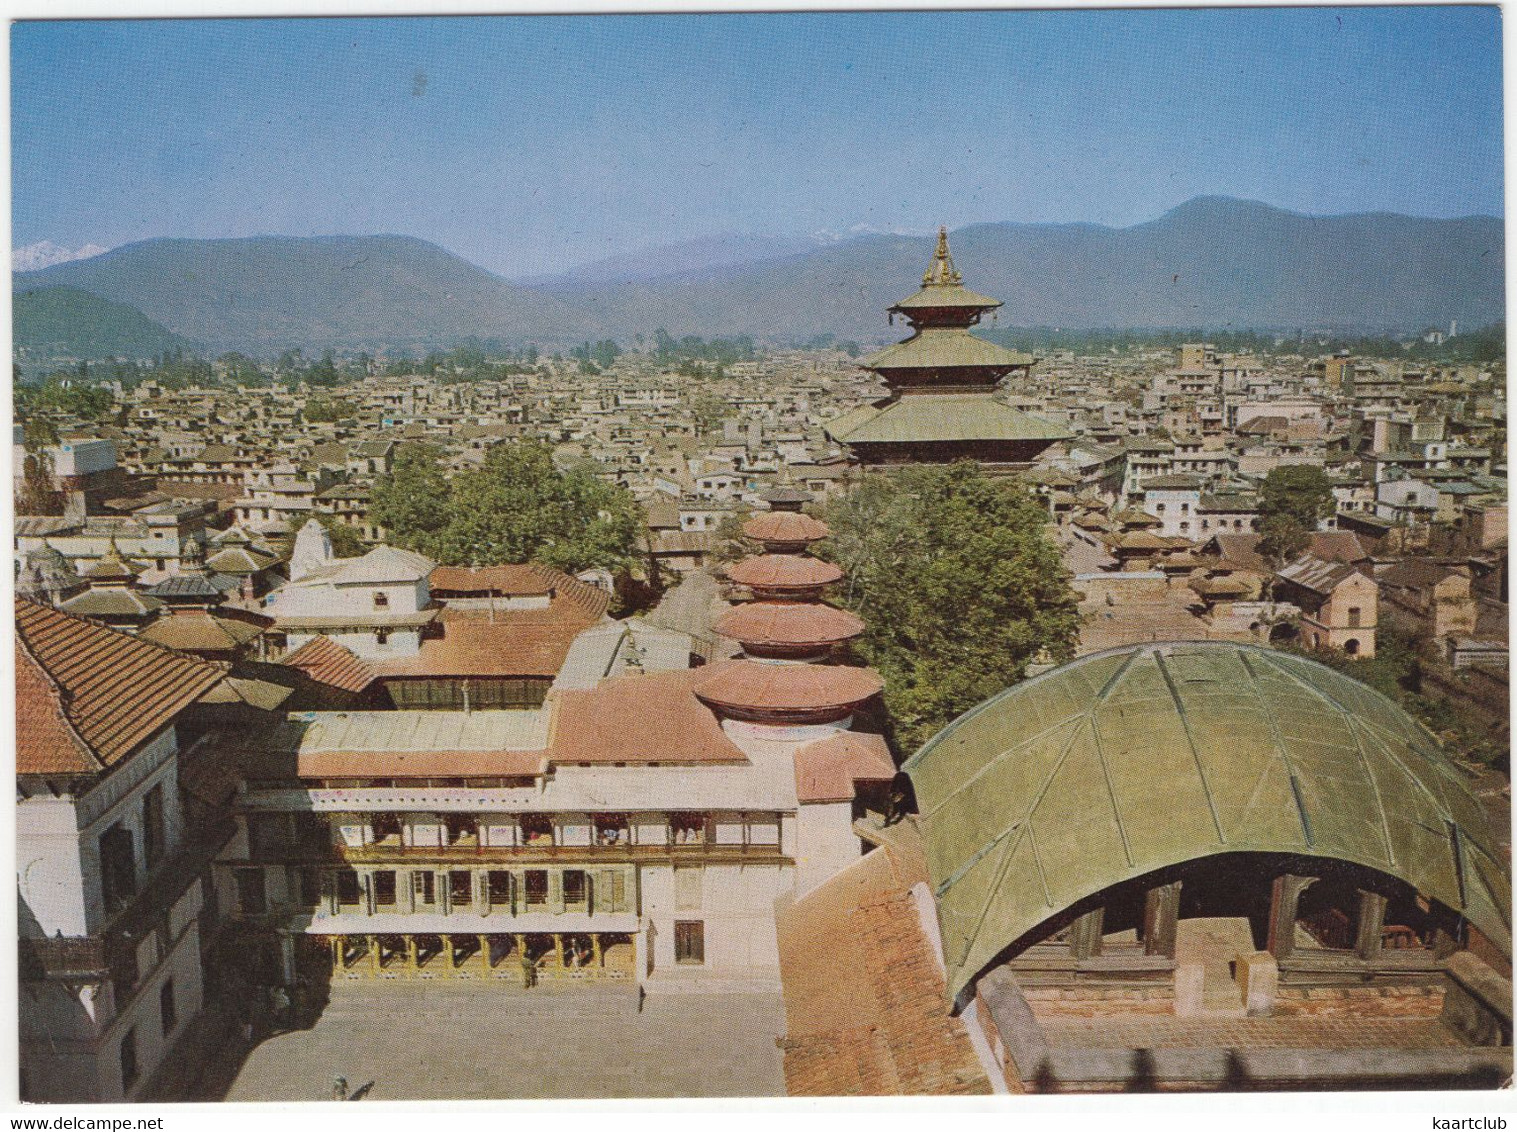 Kathmandu Valley - Nepal - Népal